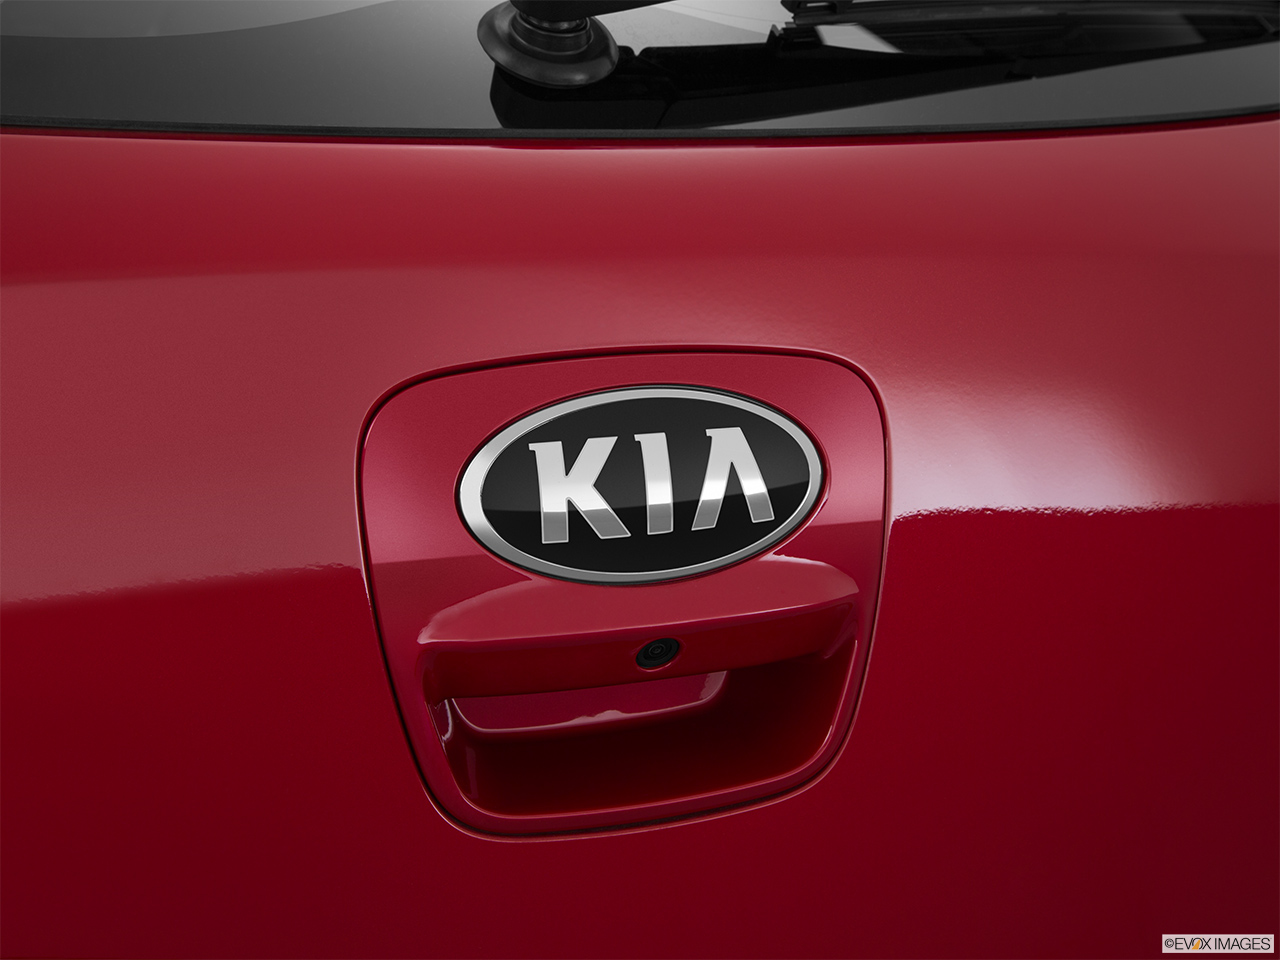 2015 Kia Rio 5-door SX Rear manufacture badge/emblem 